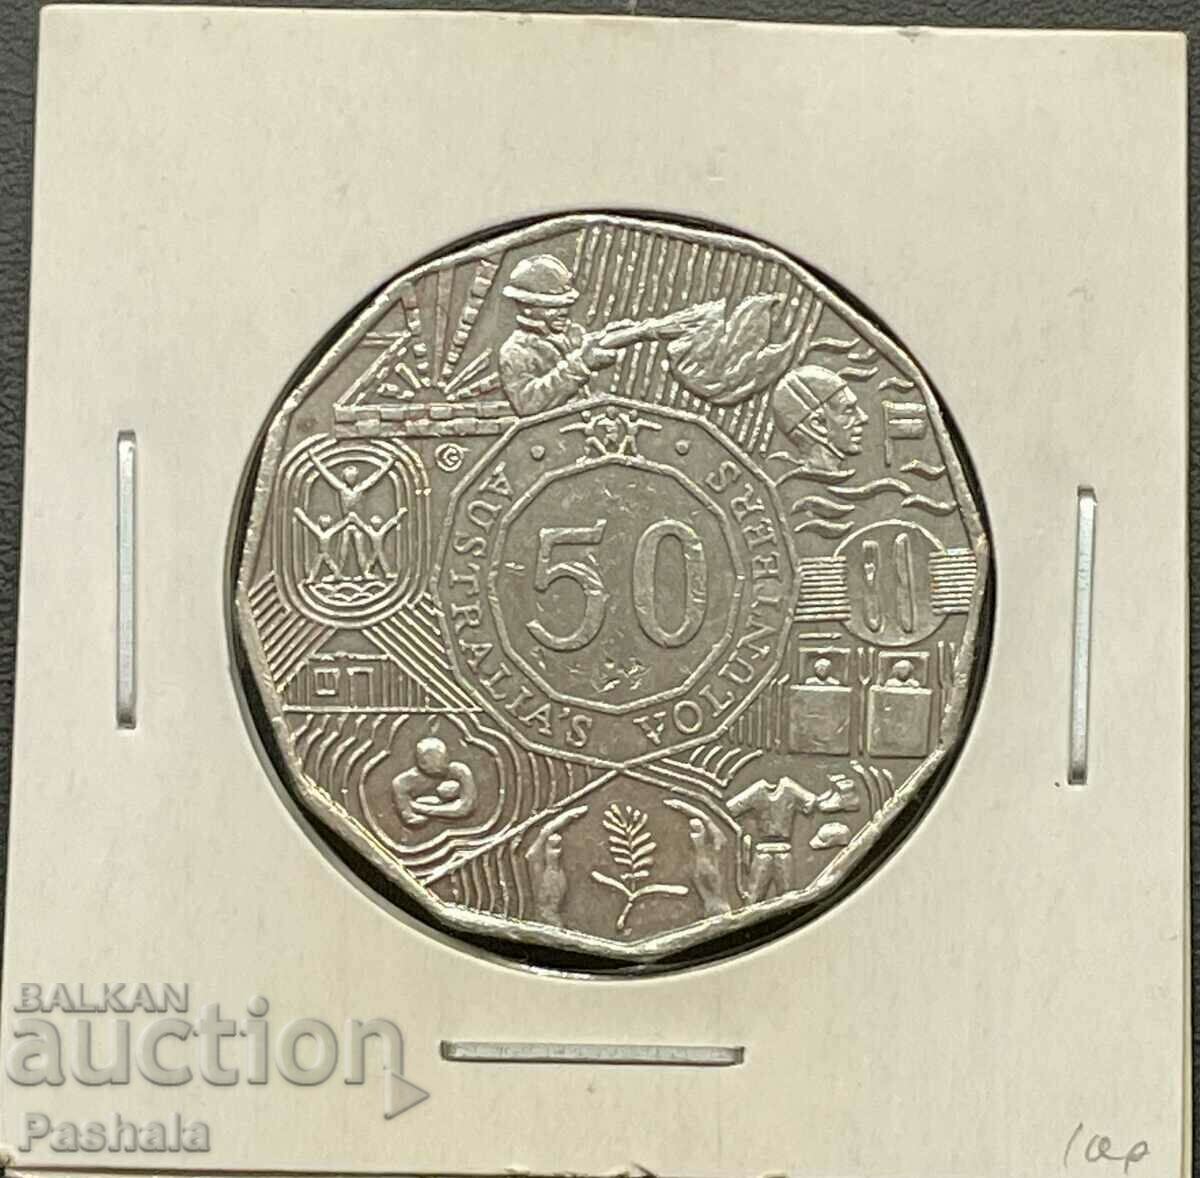 Αυστραλία 50 σεντς 2003